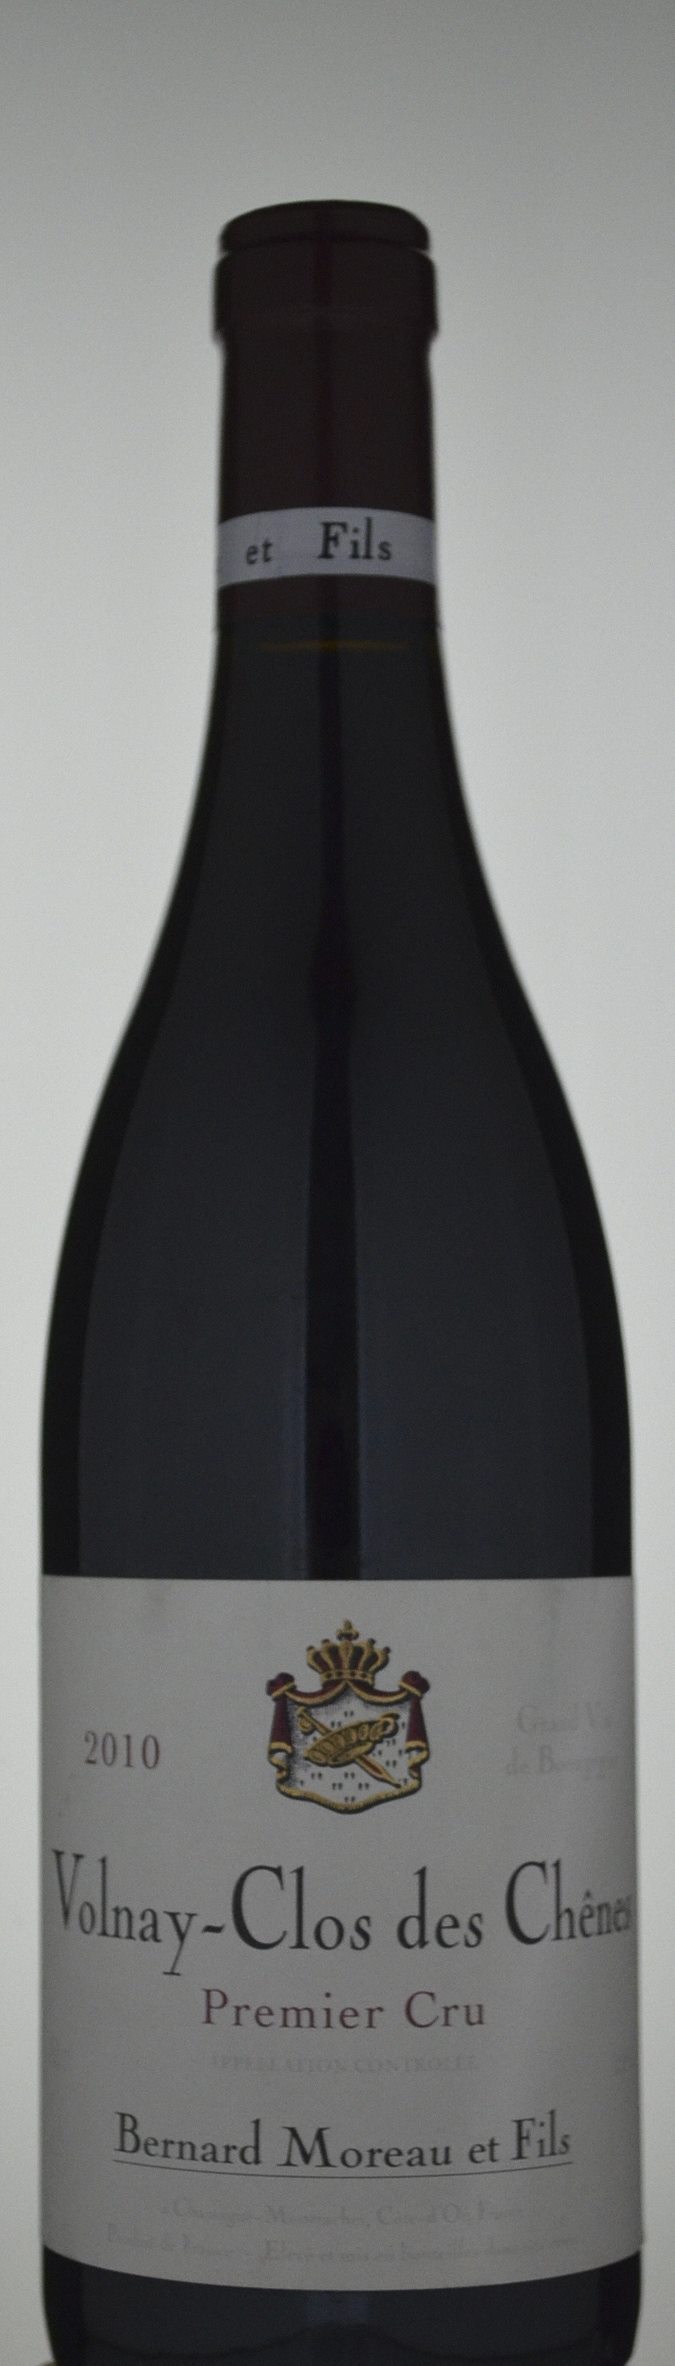 Bernard Moreau & Fils Volnay-Clos des Chenes 1er Cru Pinot Noir 2010